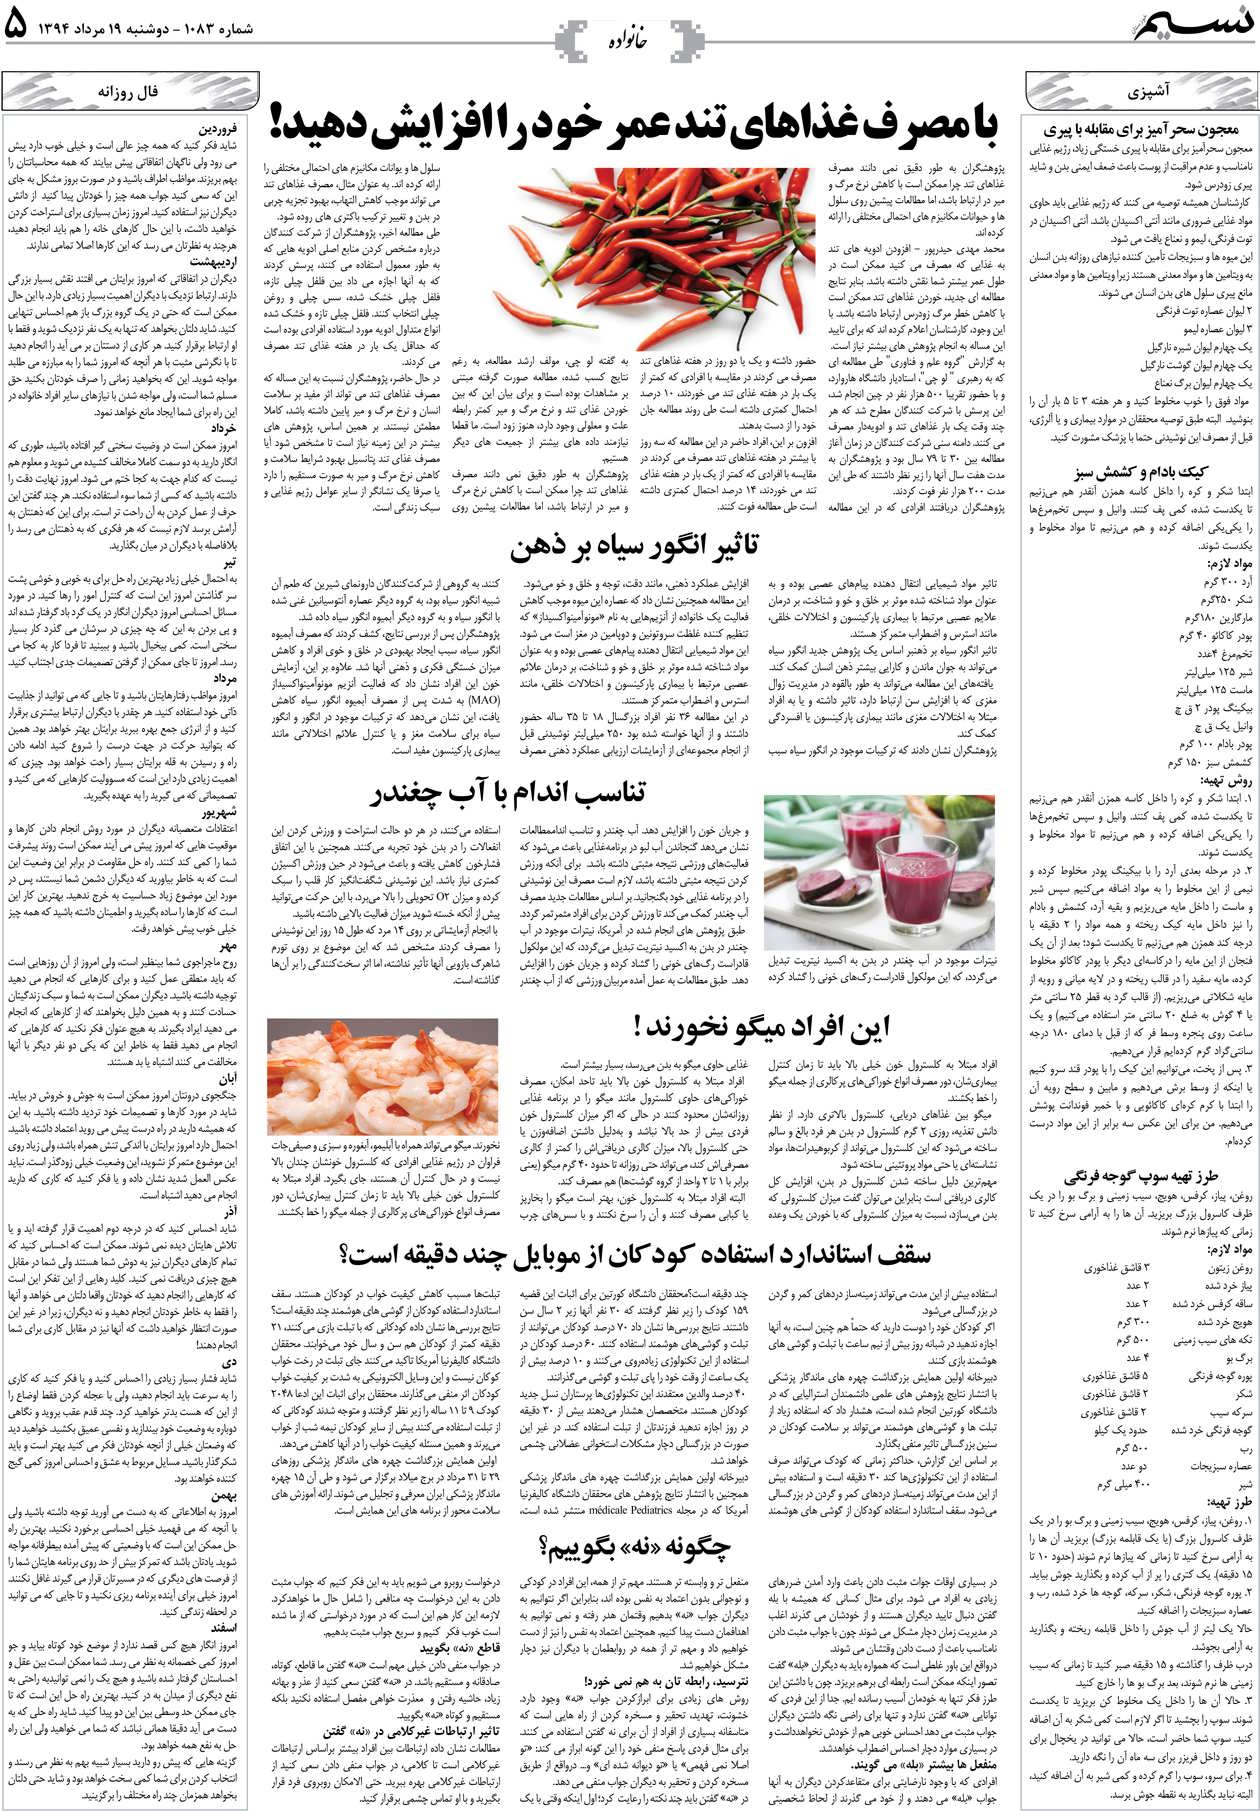 صفحه خانواده روزنامه نسیم شماره 1083